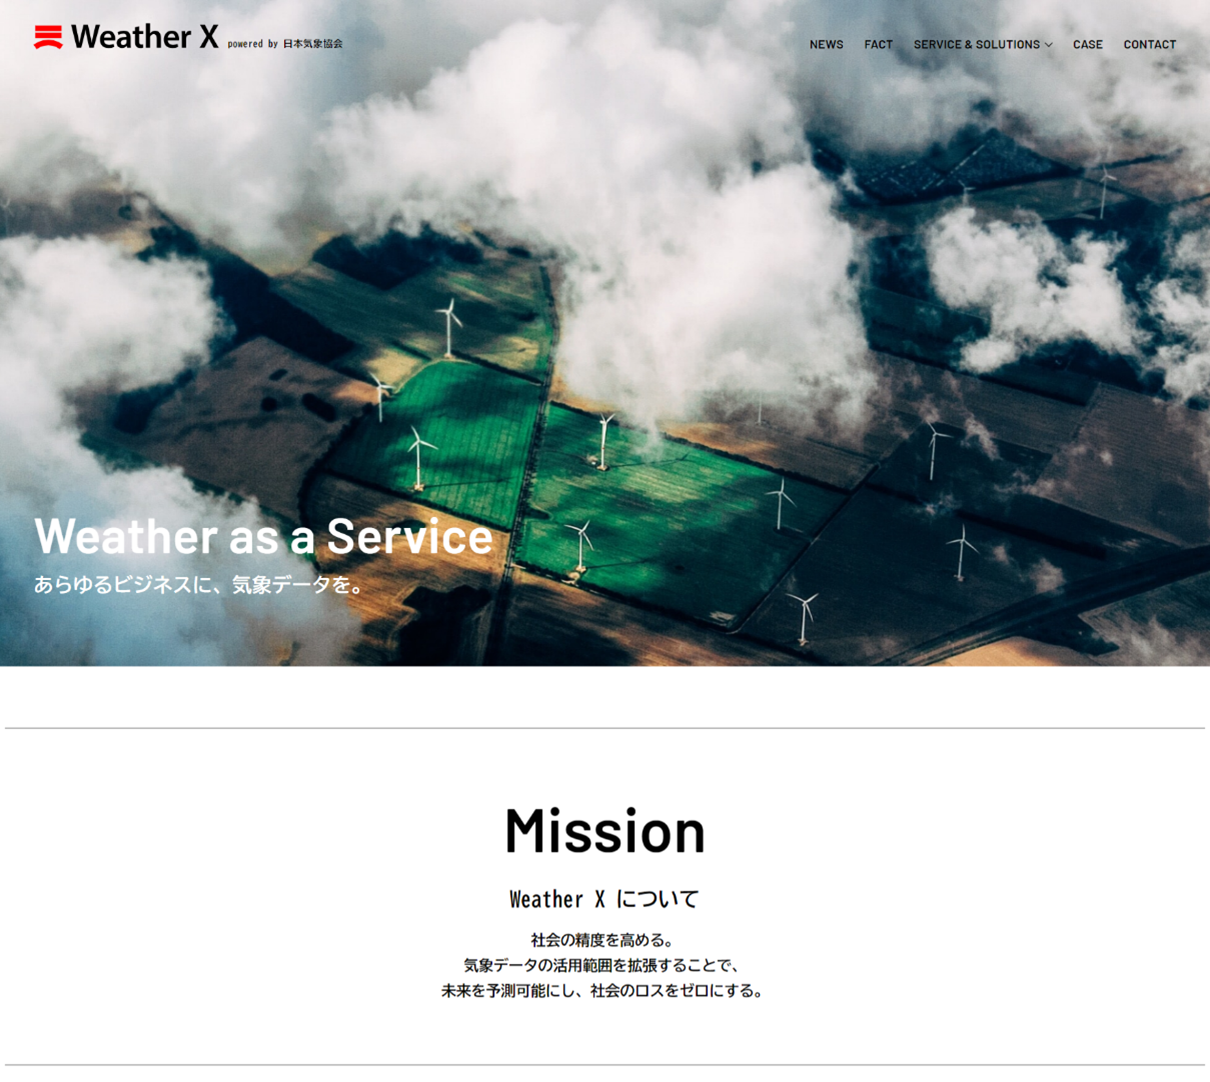 ウェザーマーケティング情報メディア「Weather X」イメージ